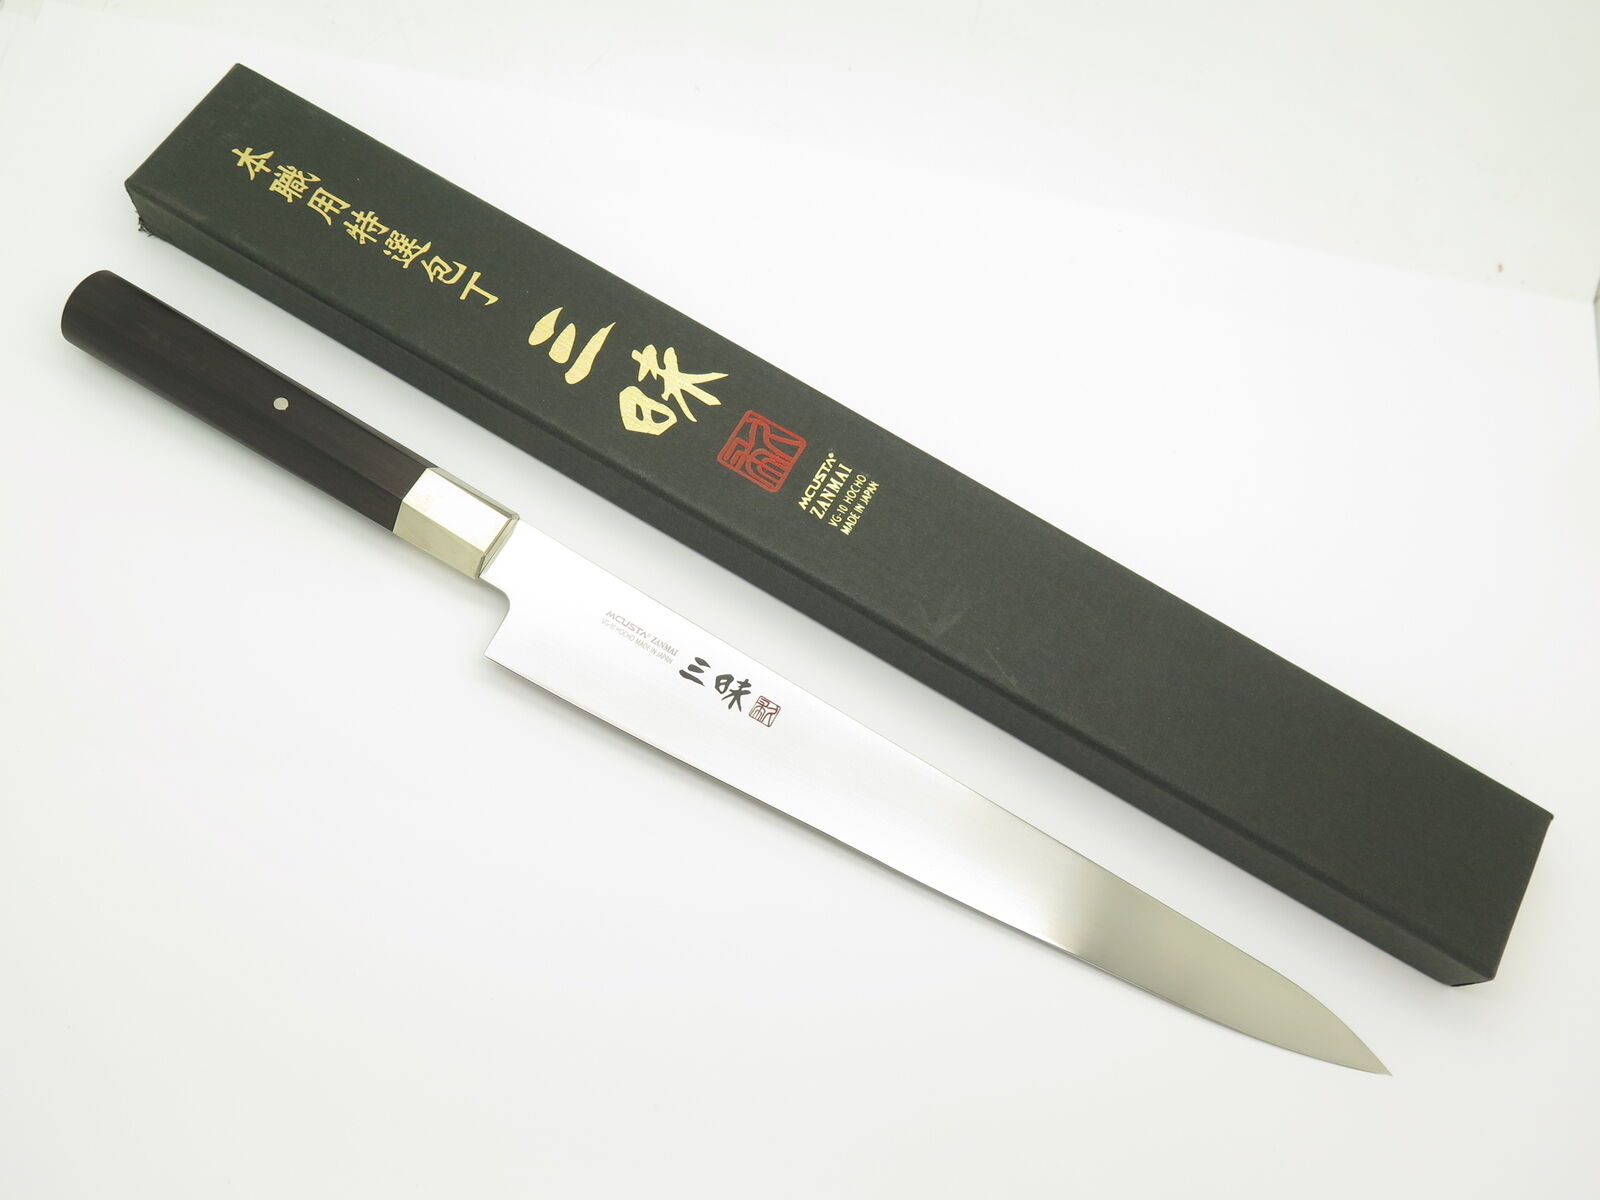 Mcusta Zanmai HZ2-3010V Seki Japan 255mm Japanese Kitchen Cutlery Slicing Knife